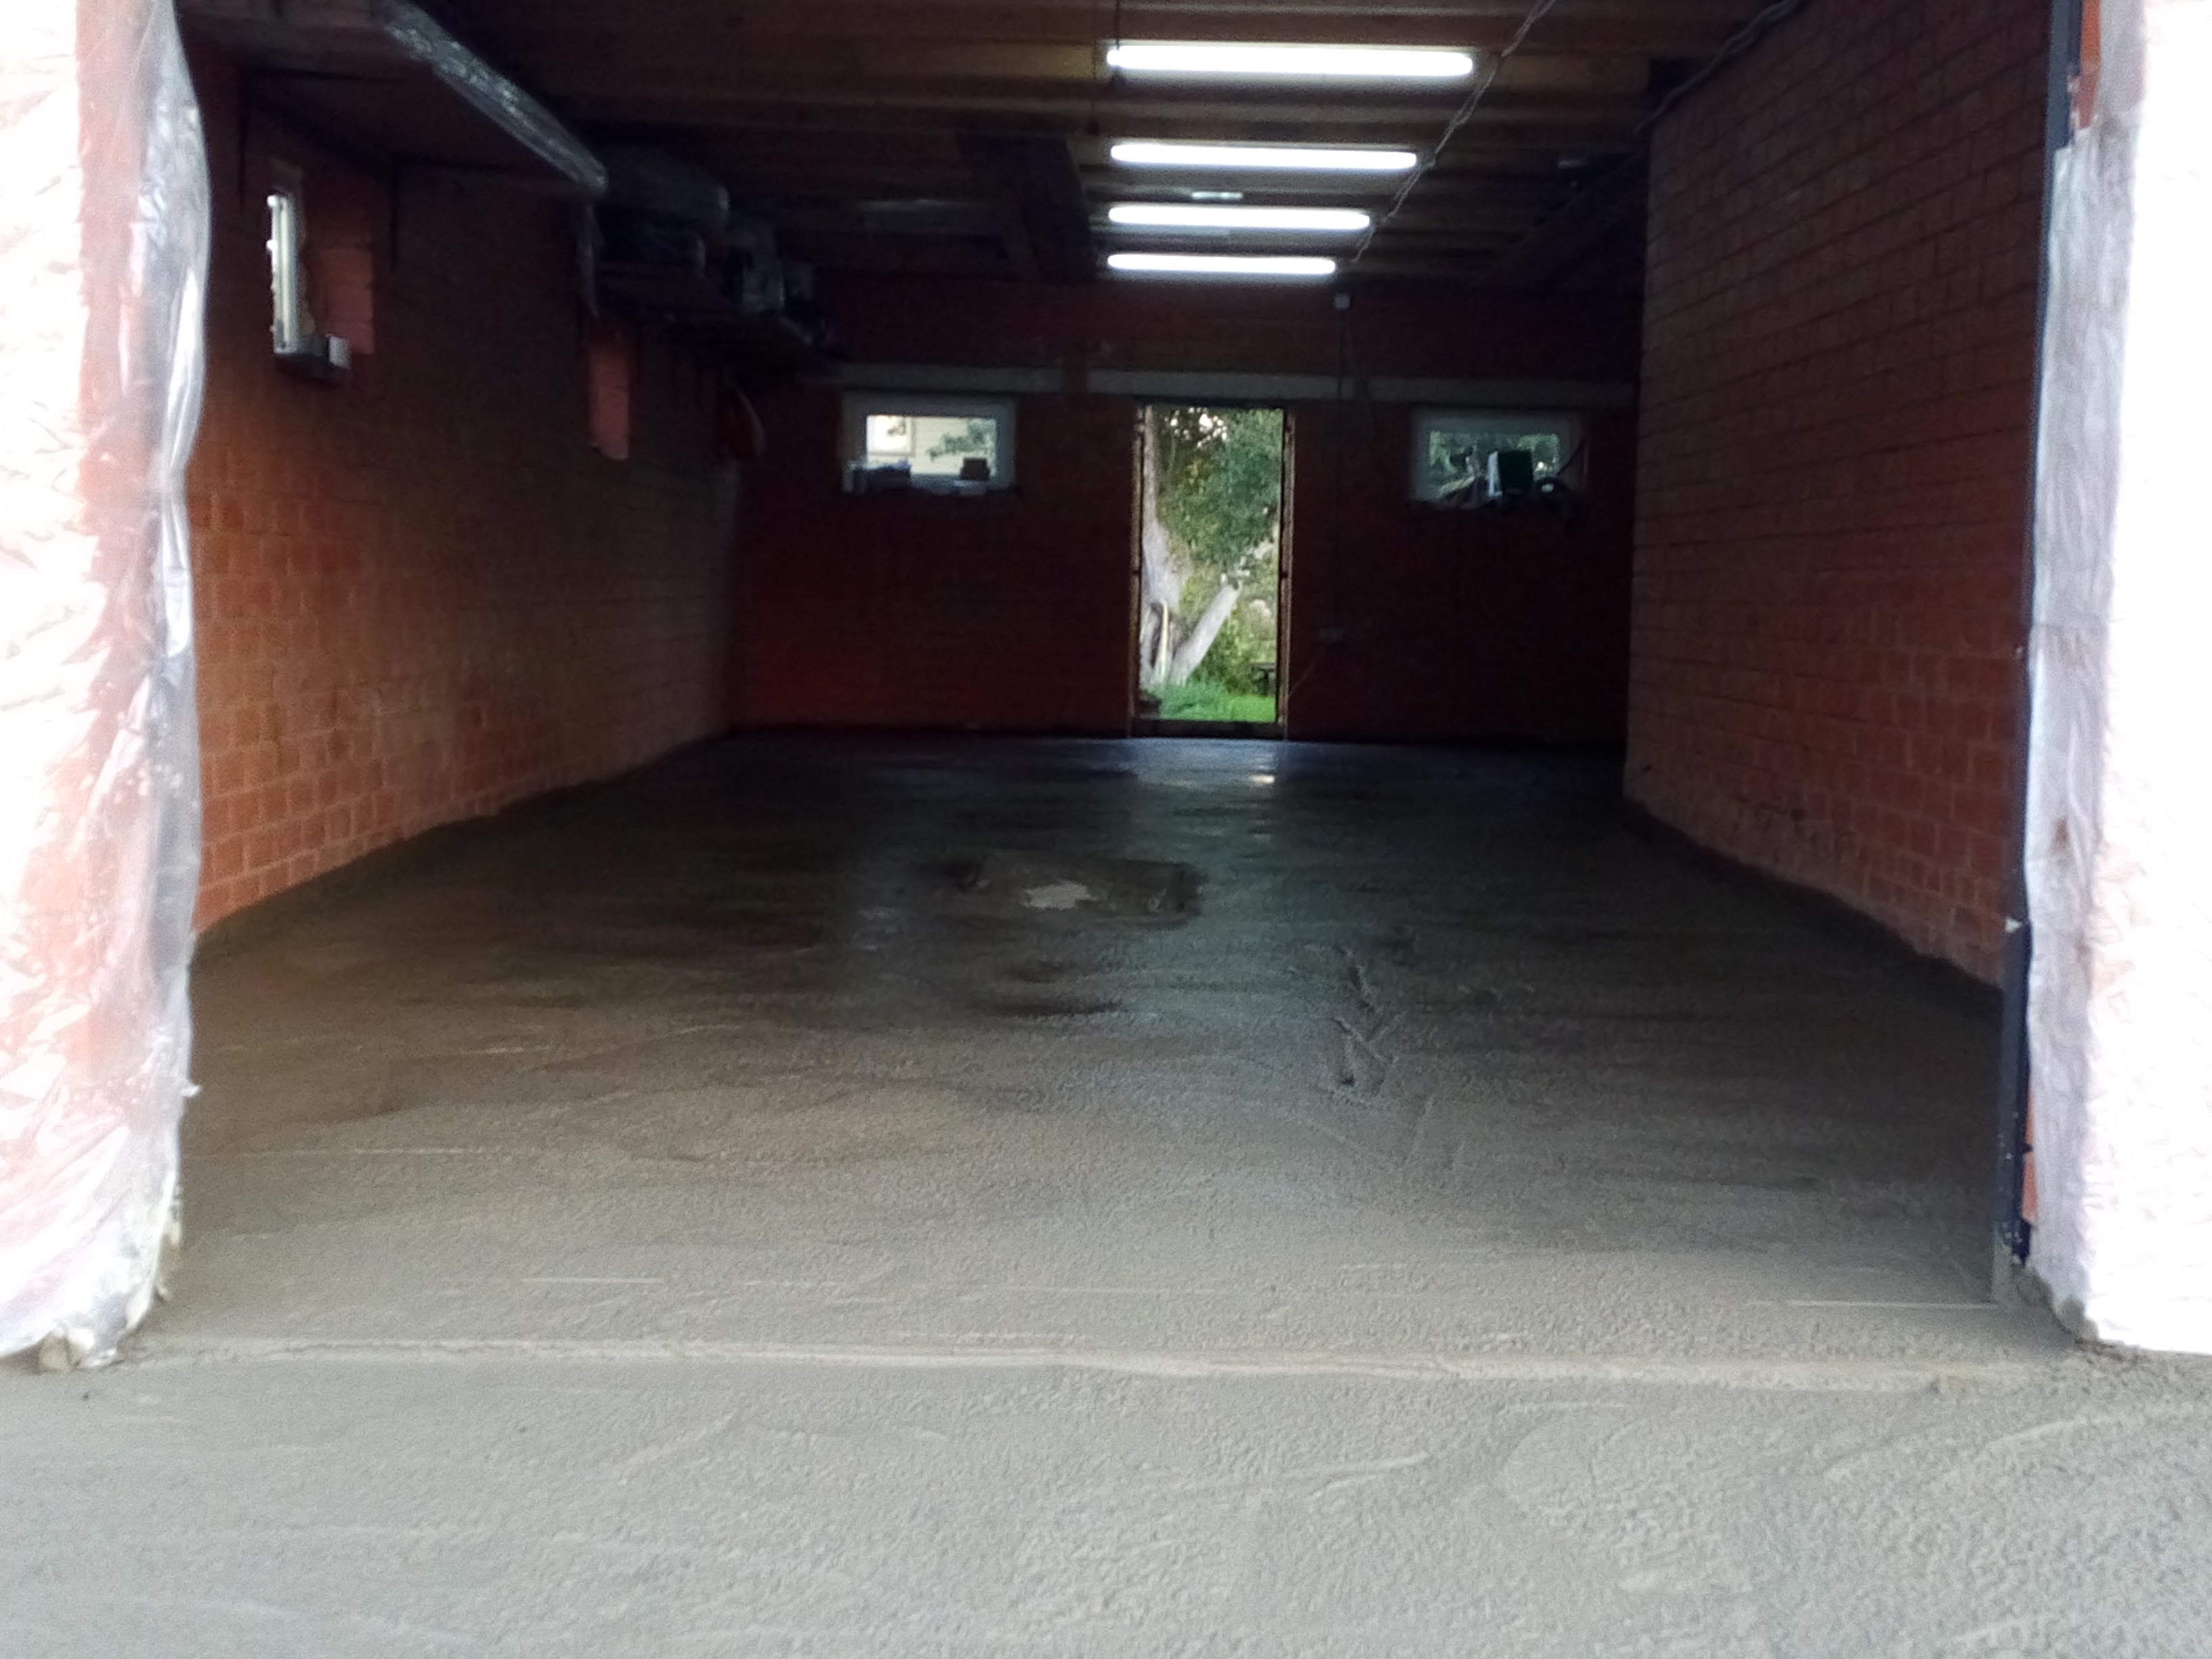 Заливка пола бетоном в гараже своими руками:  залить пол в гараже .